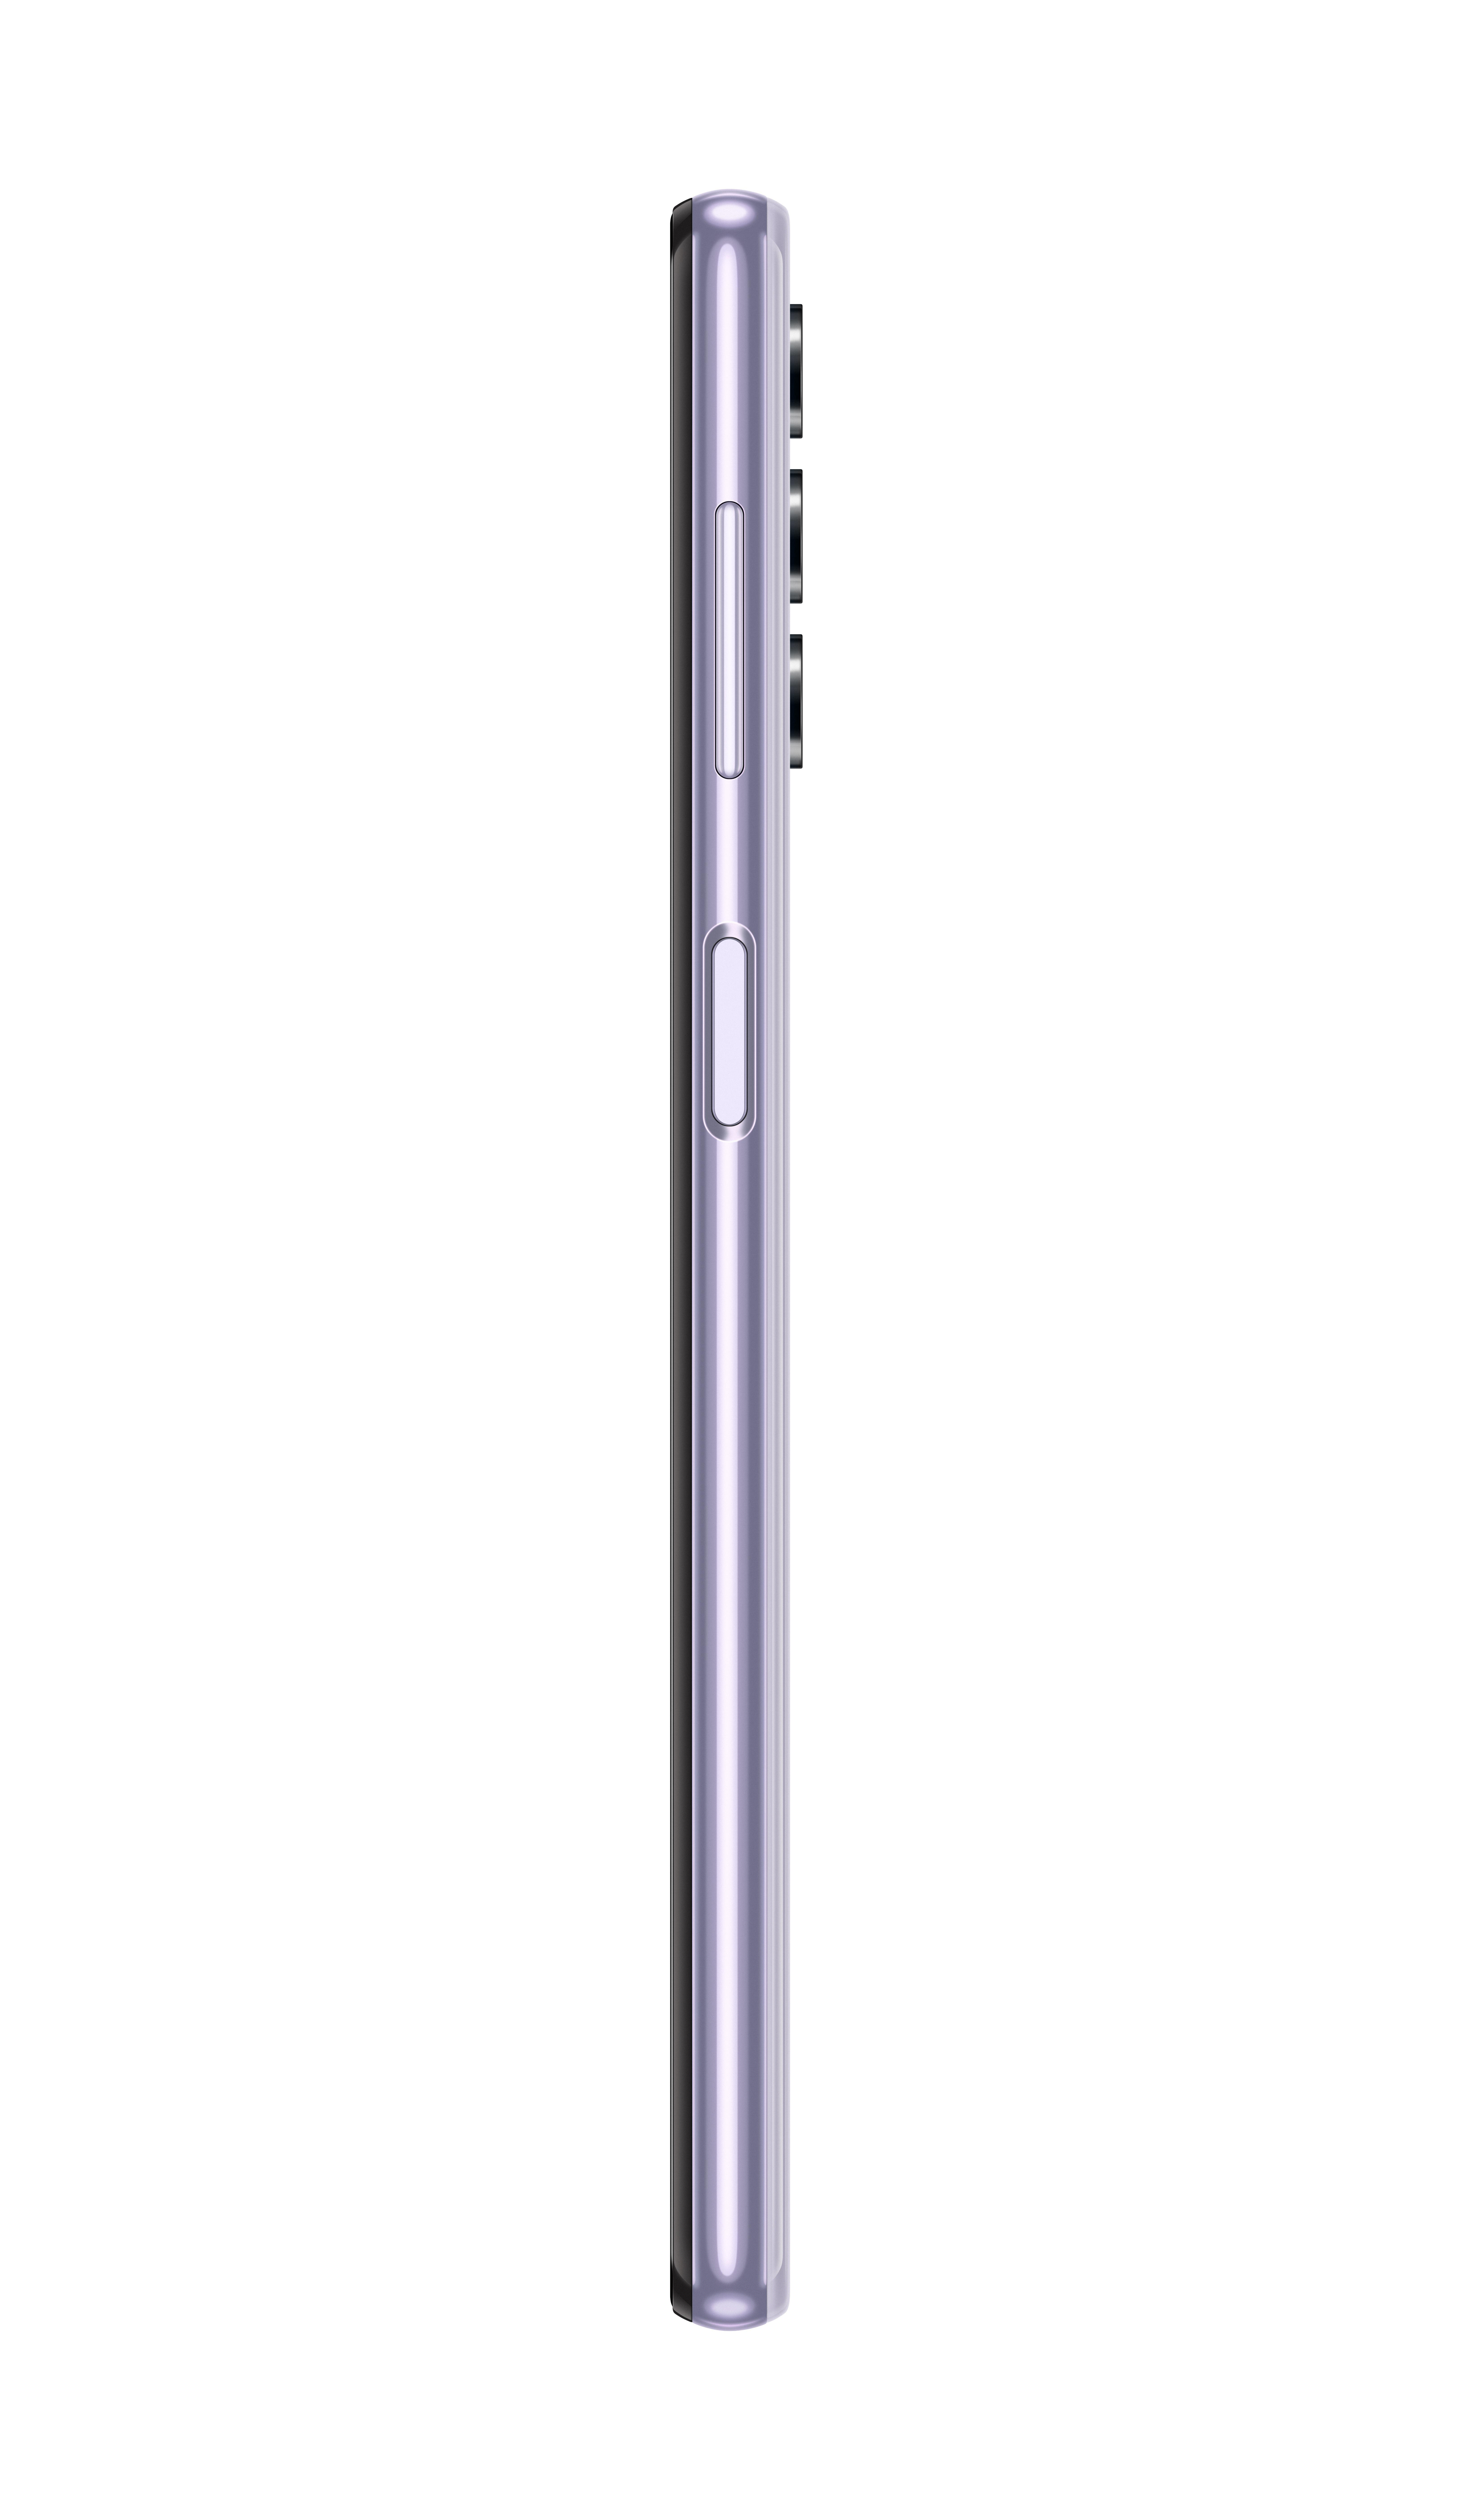 128 Galaxy SIM SAMSUNG Dual GB Violett A32 5G